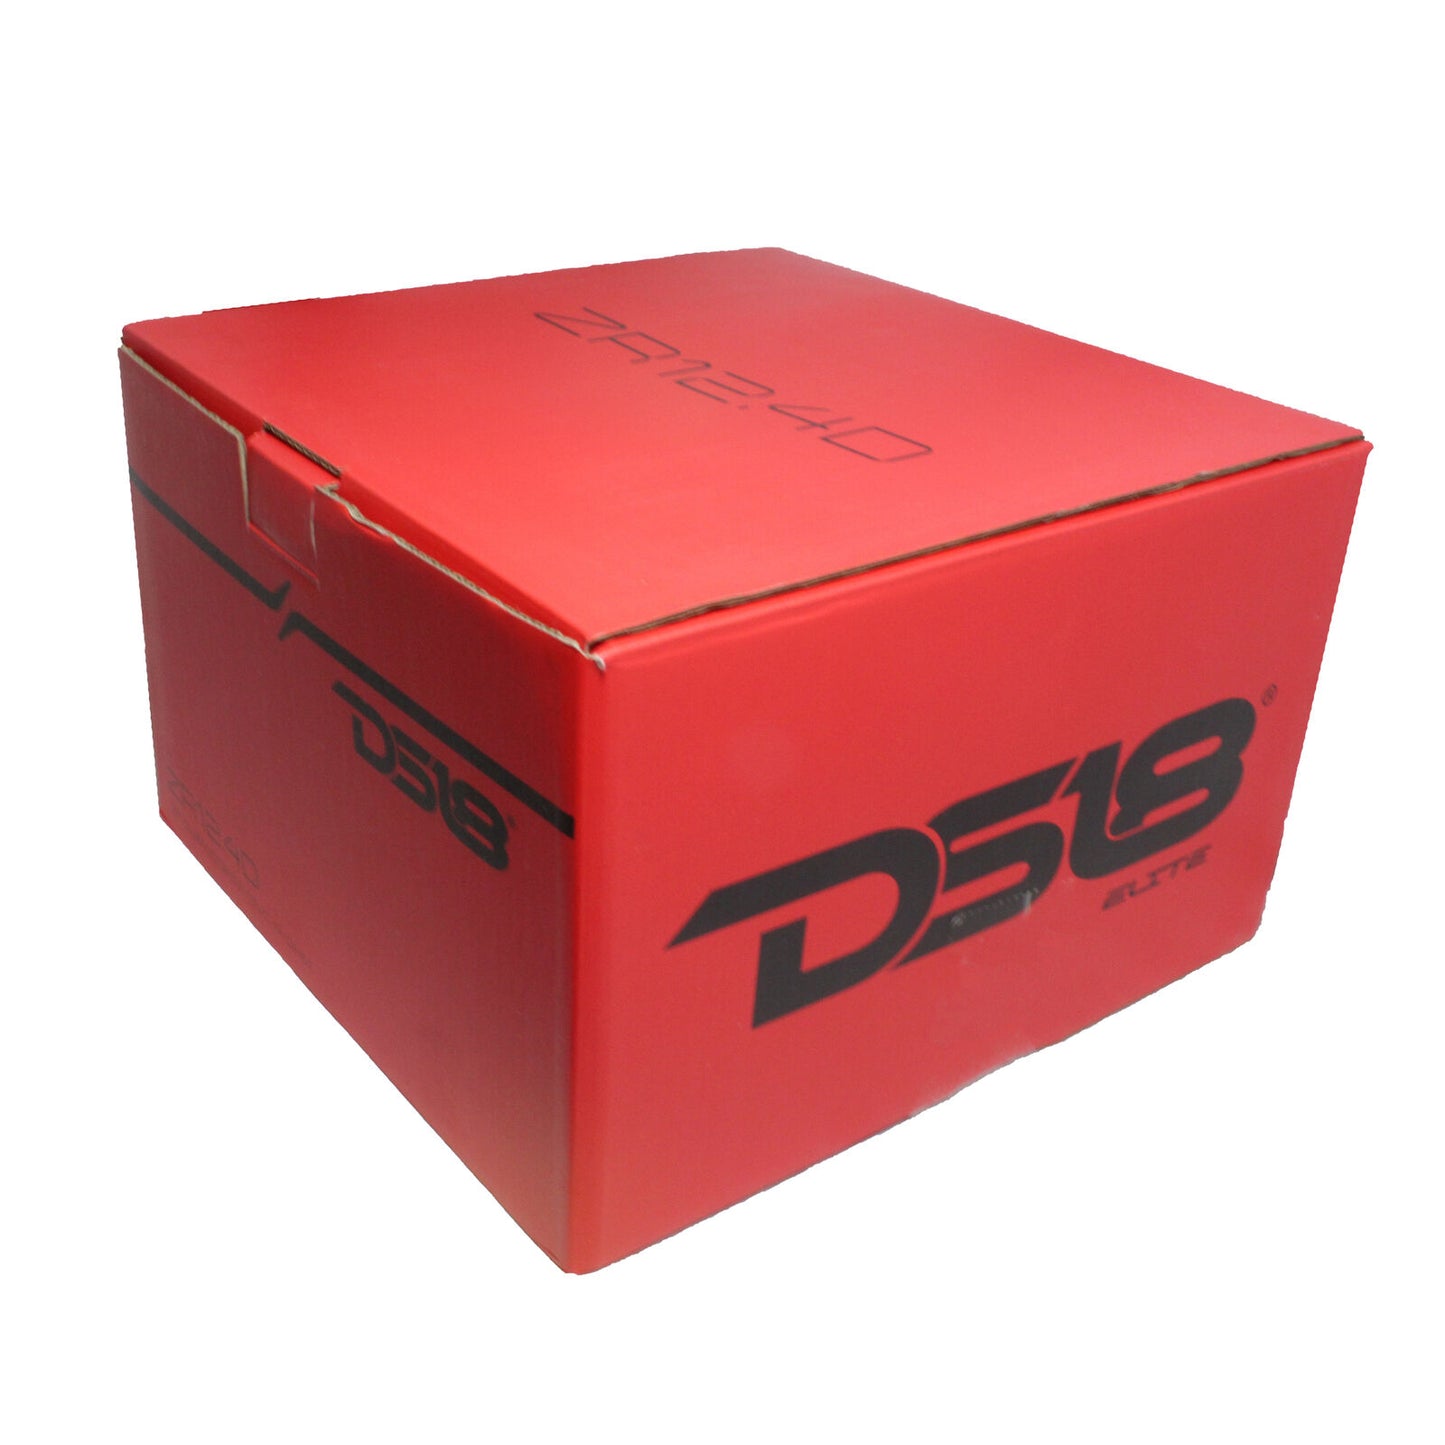 DS18 ZR12.4D 12" 1500 W Max Dual 4-Ohm Voice Coil DVC Stereo Car Audio Subwoofer